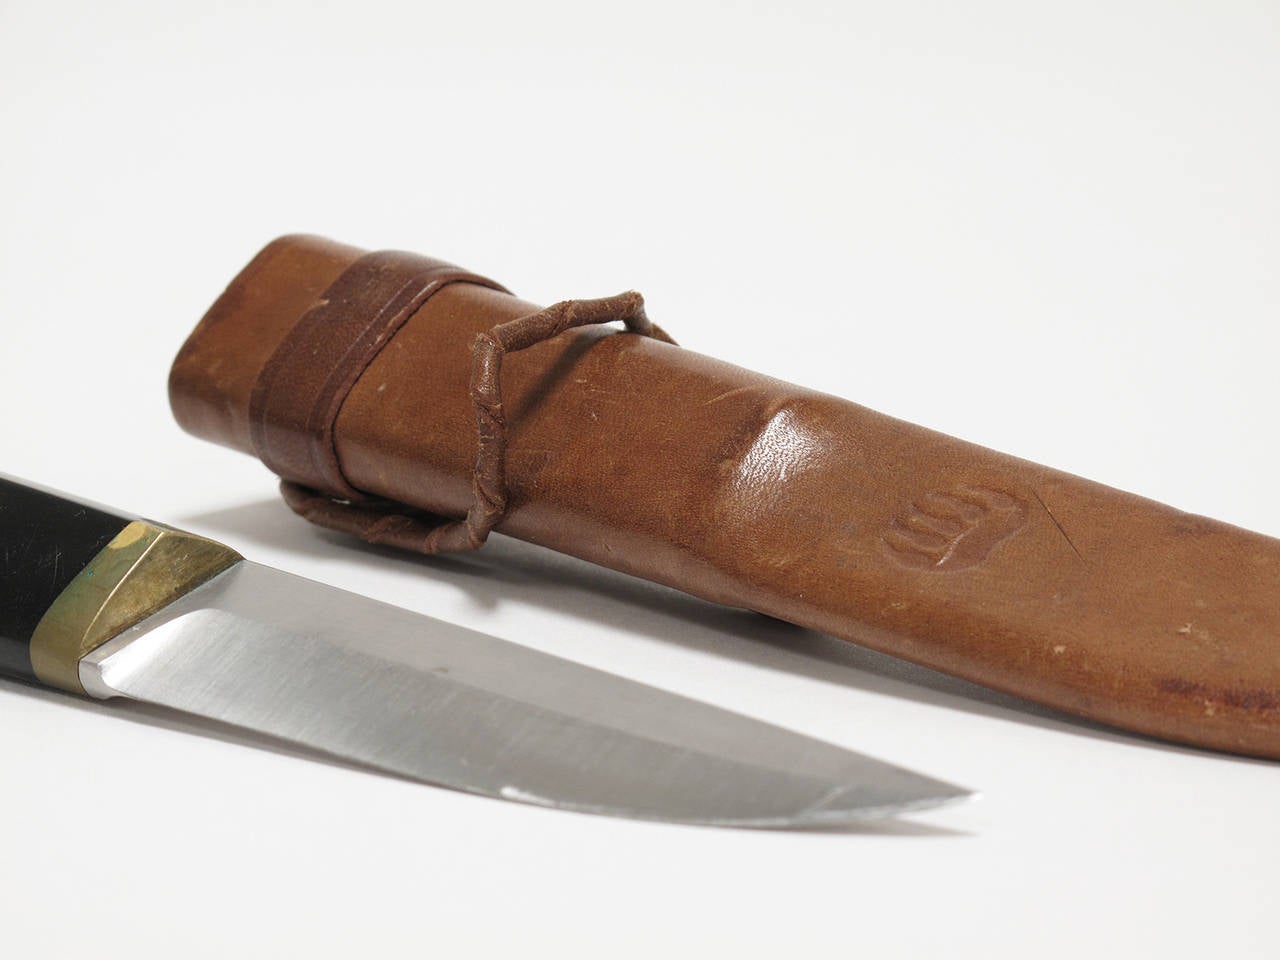 Brass Puukko Knife and Leather Sheath by Tapio Wirkkala